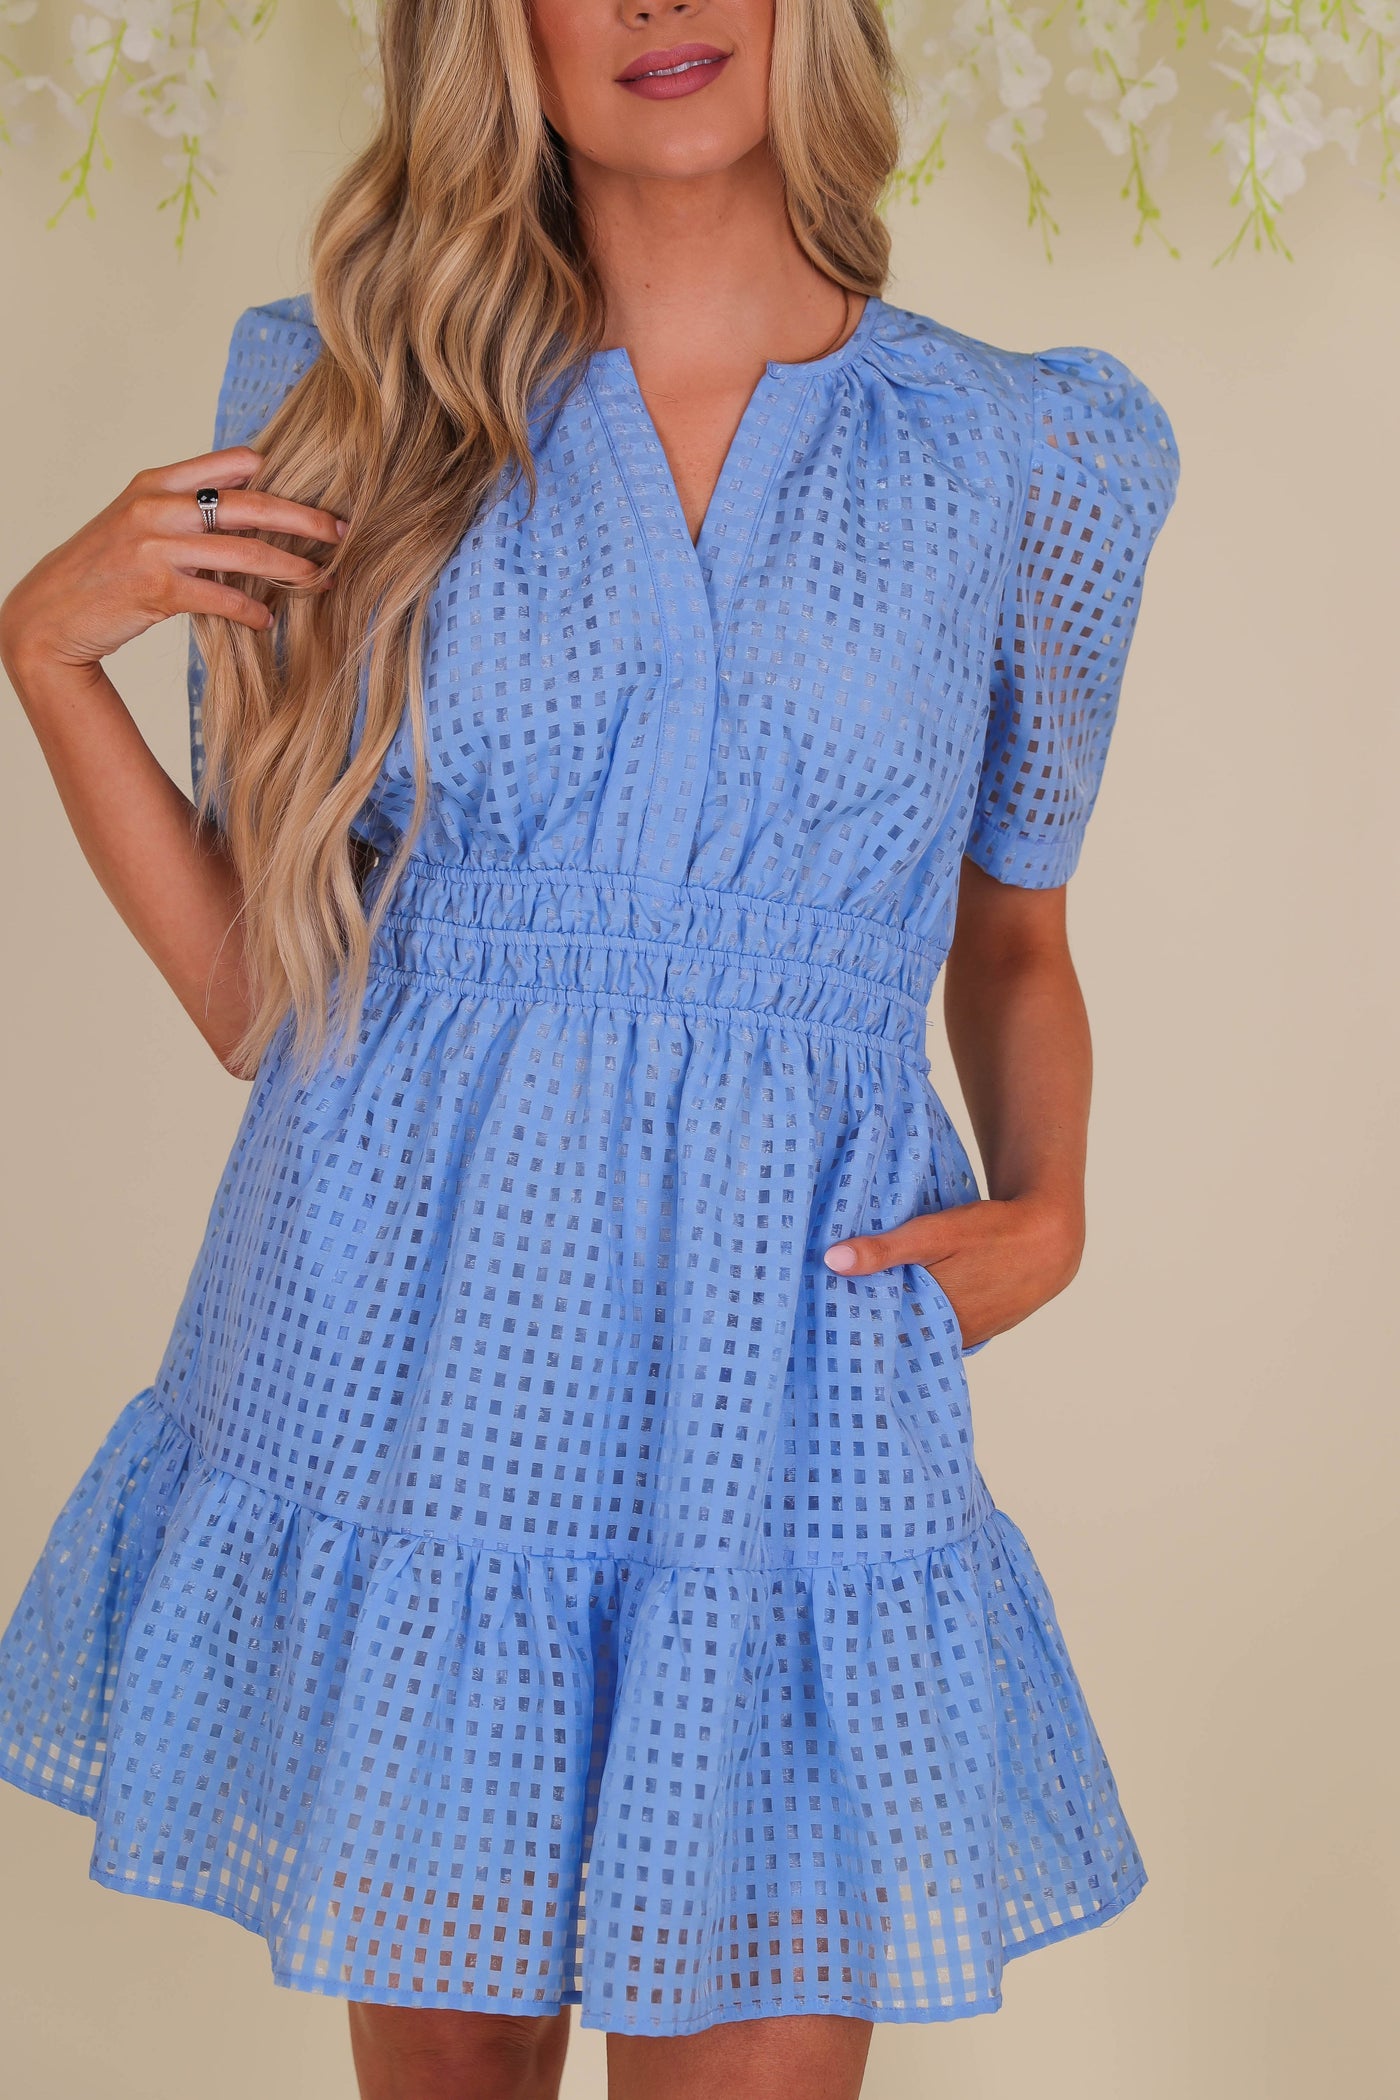 Organza Puff Sleeve Dress- Women's Blue Check Dress- Affordable Summer Dresses